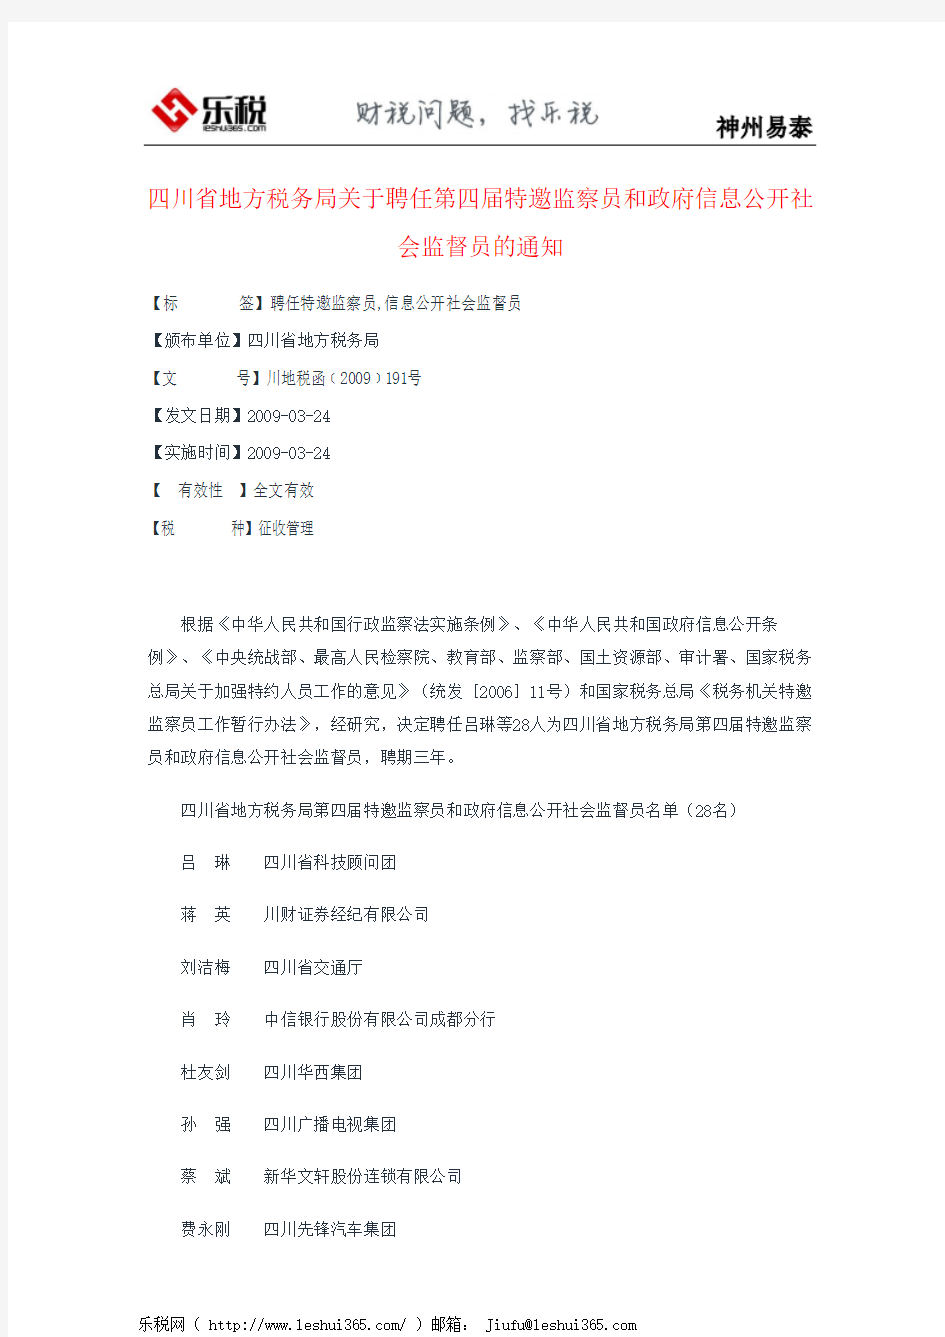 四川省地方税务局关于聘任第四届特邀监察员和政府信息公开社会监